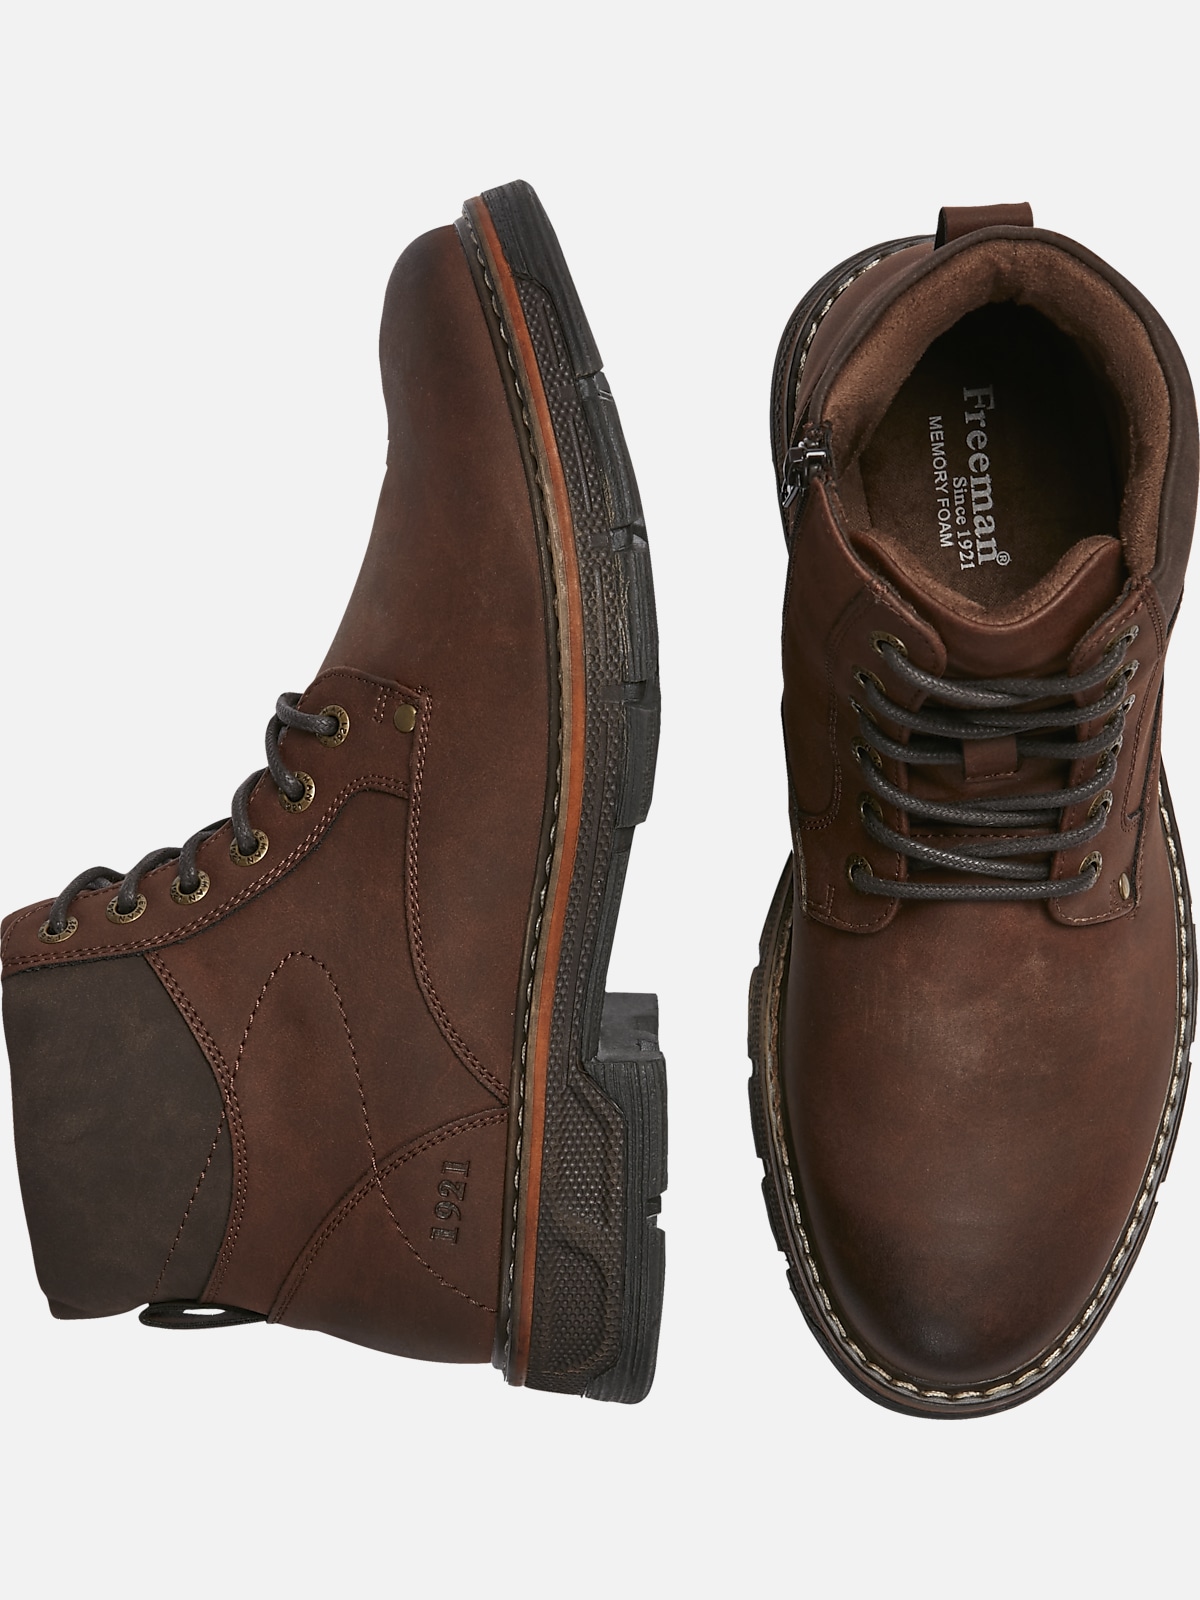 Freeman Dillon Plain Toe Lace Up Boots | Boots| Men's Wearhouse